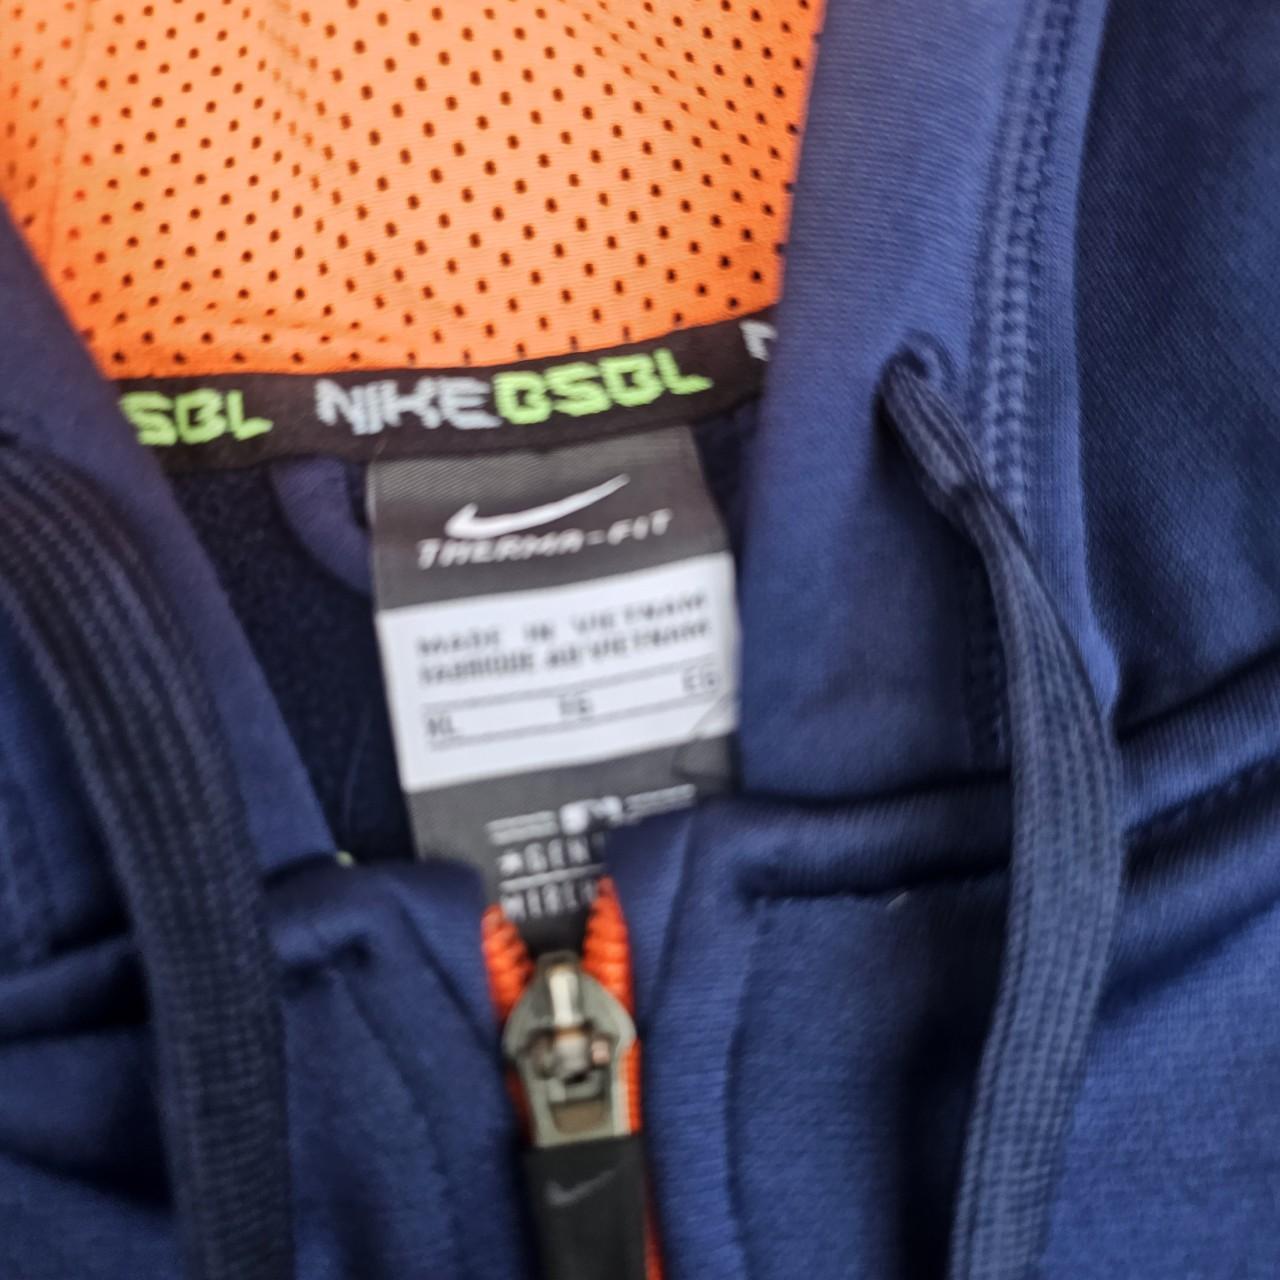 Detroit tigers Nike zip up hoodie, really well made, - Depop